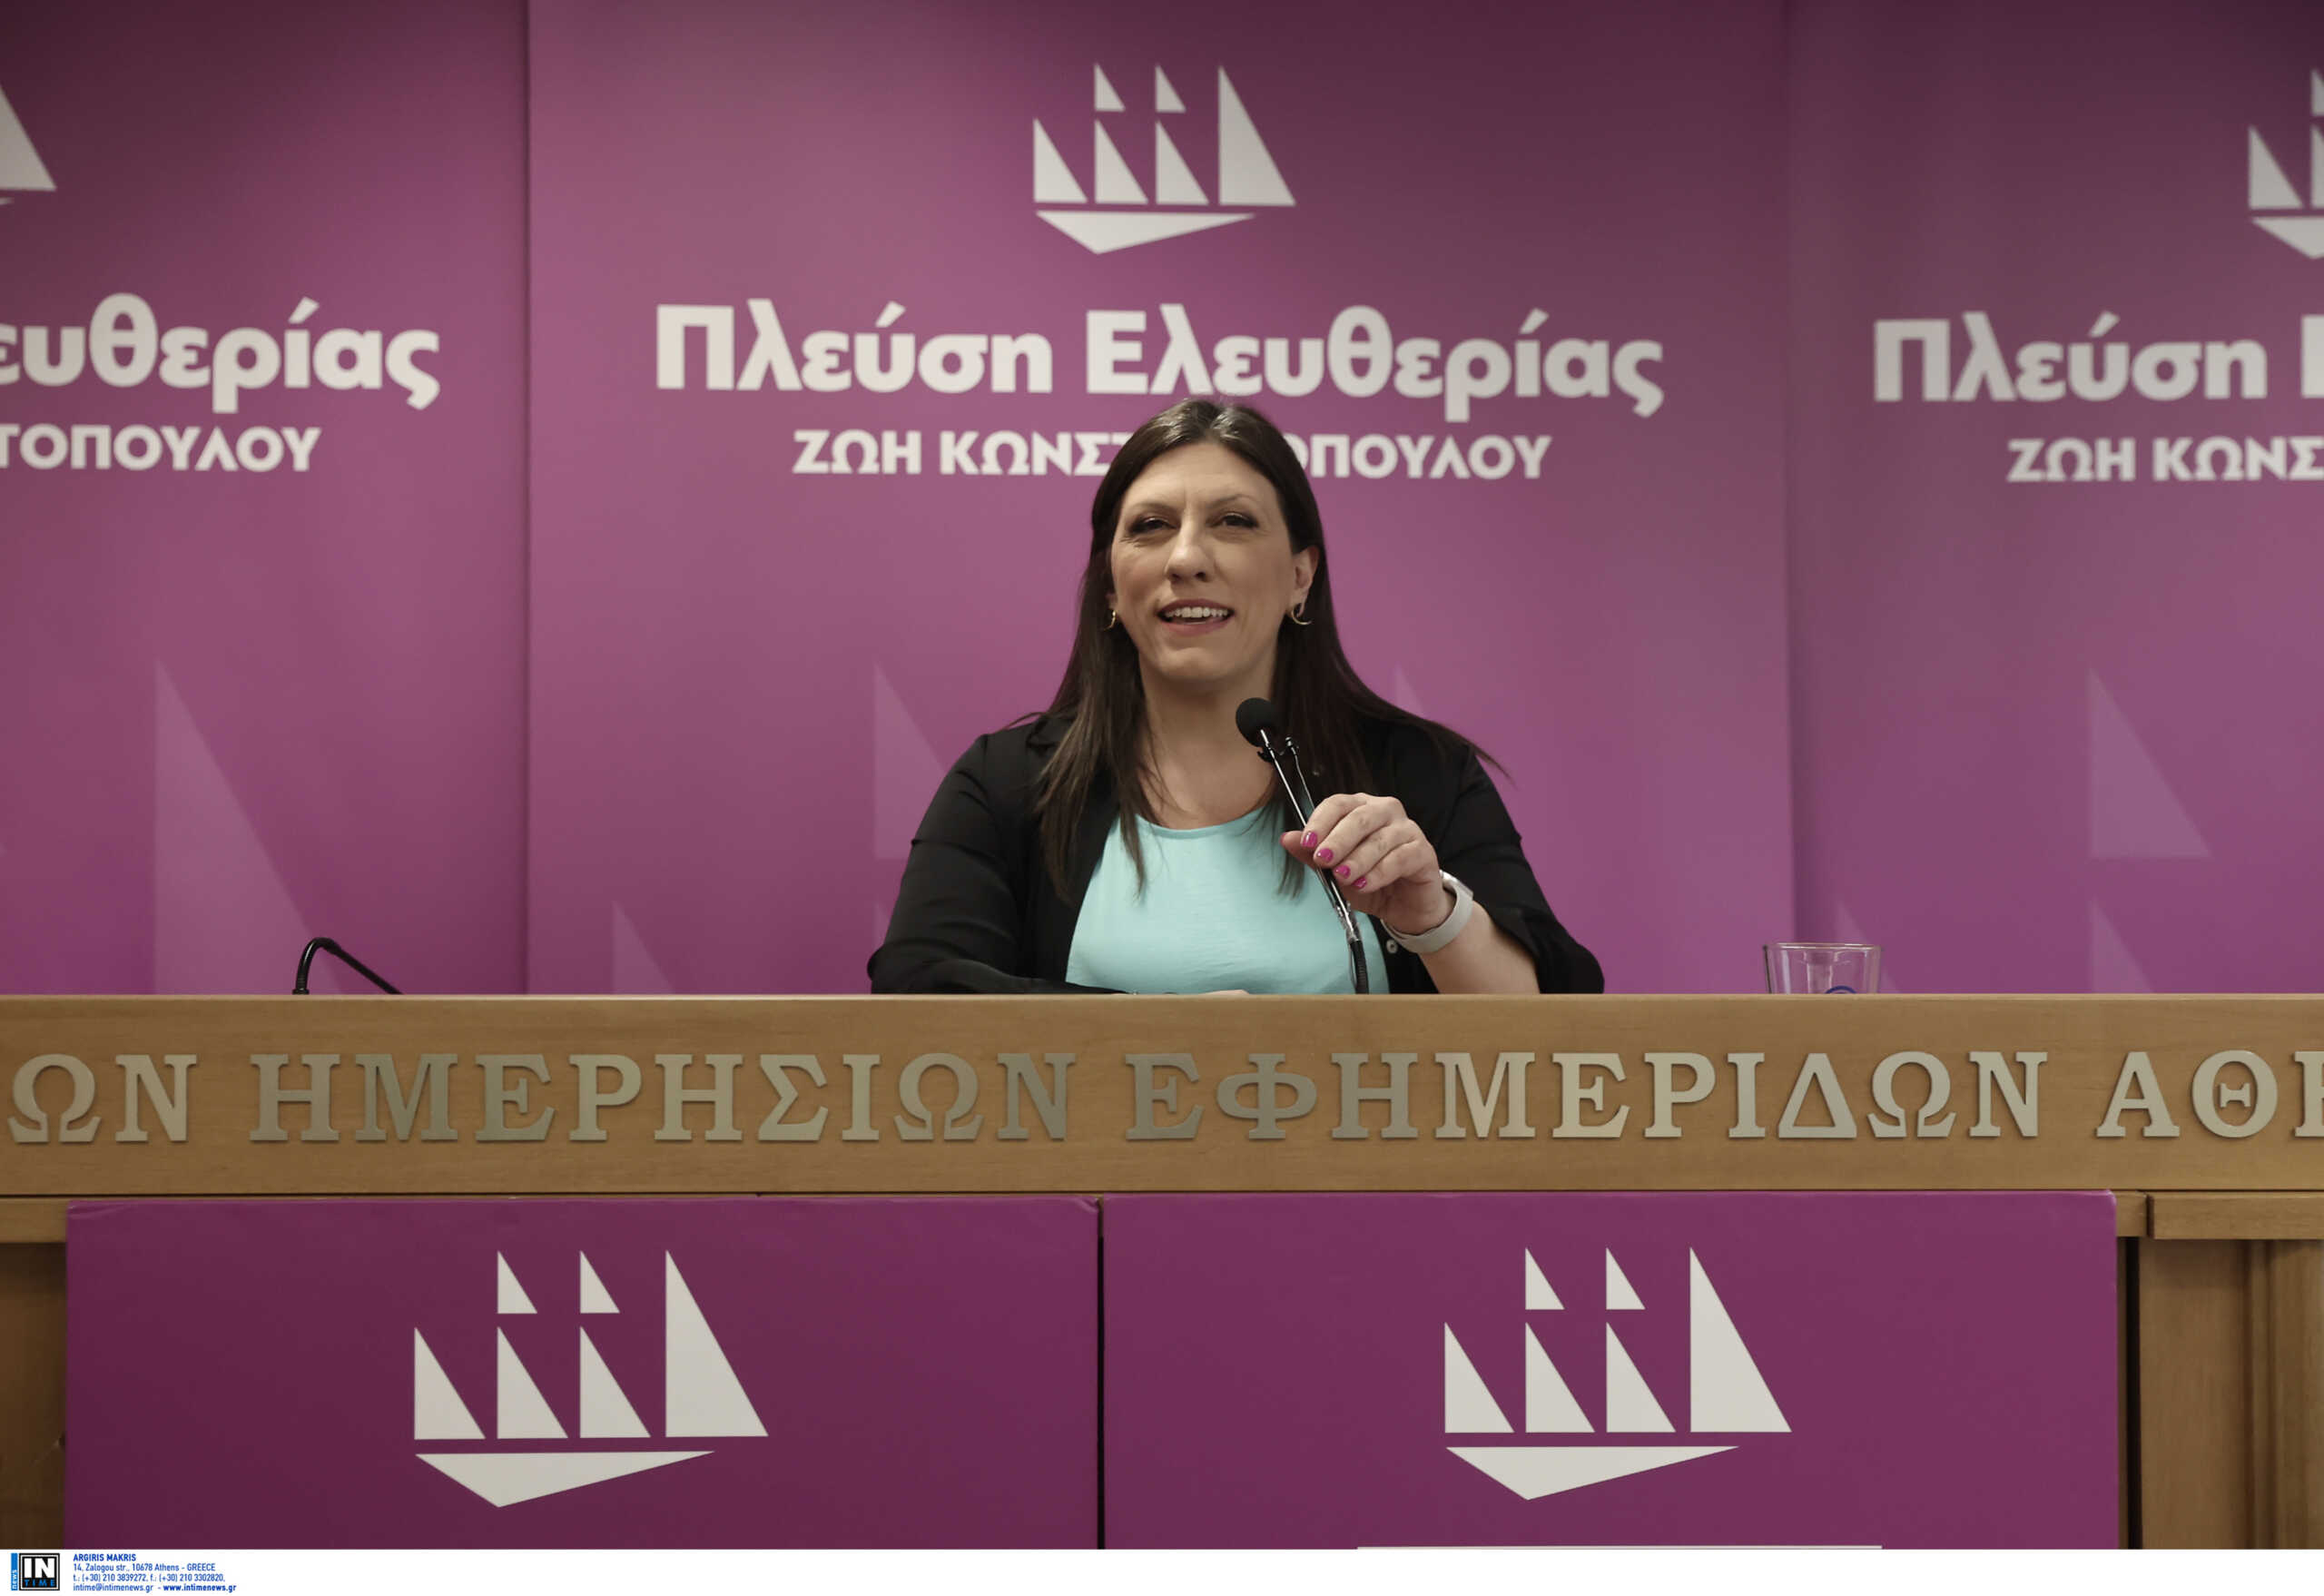 Ζωή Κωνσταντοπούλου: Debate θέλουν οι αποχωρήσαντες από την Πλεύση Ελευθερίας – Ζητούν και τον Διαμαντή Καραναστάση